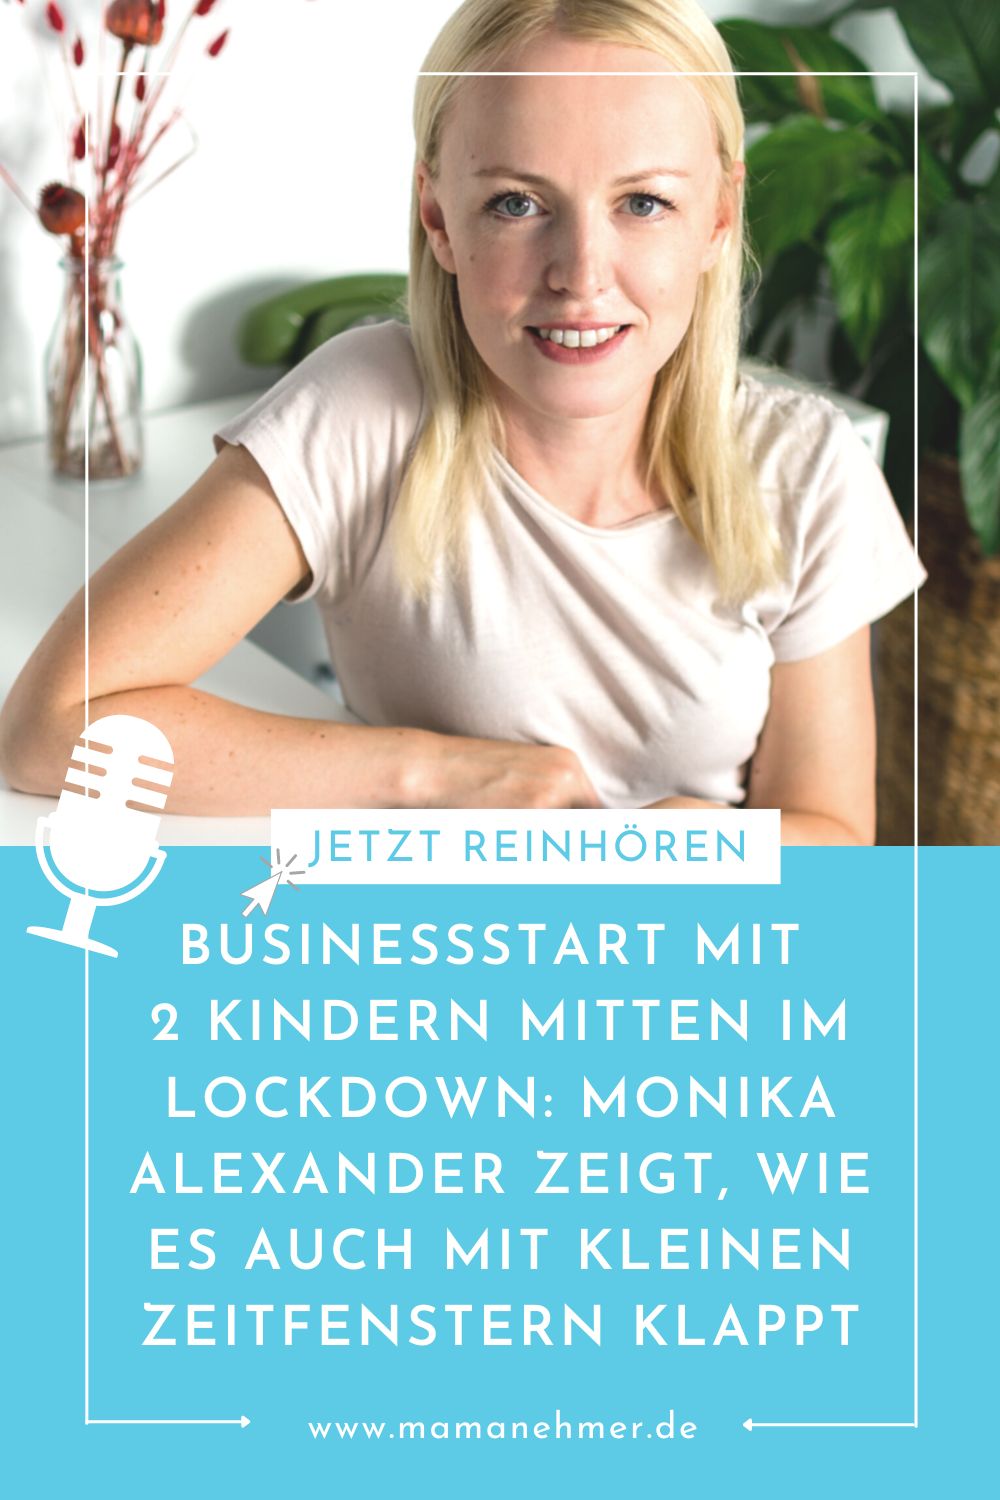 Businessstart mit 2 Kleinkindern und mitten im Lockdown – In diesem Interview zeigt dir Mompreneur Monika Alexander, wie der Businessstart auch mit kleinen Zeitfenstern gelingt. #Mamanehmer